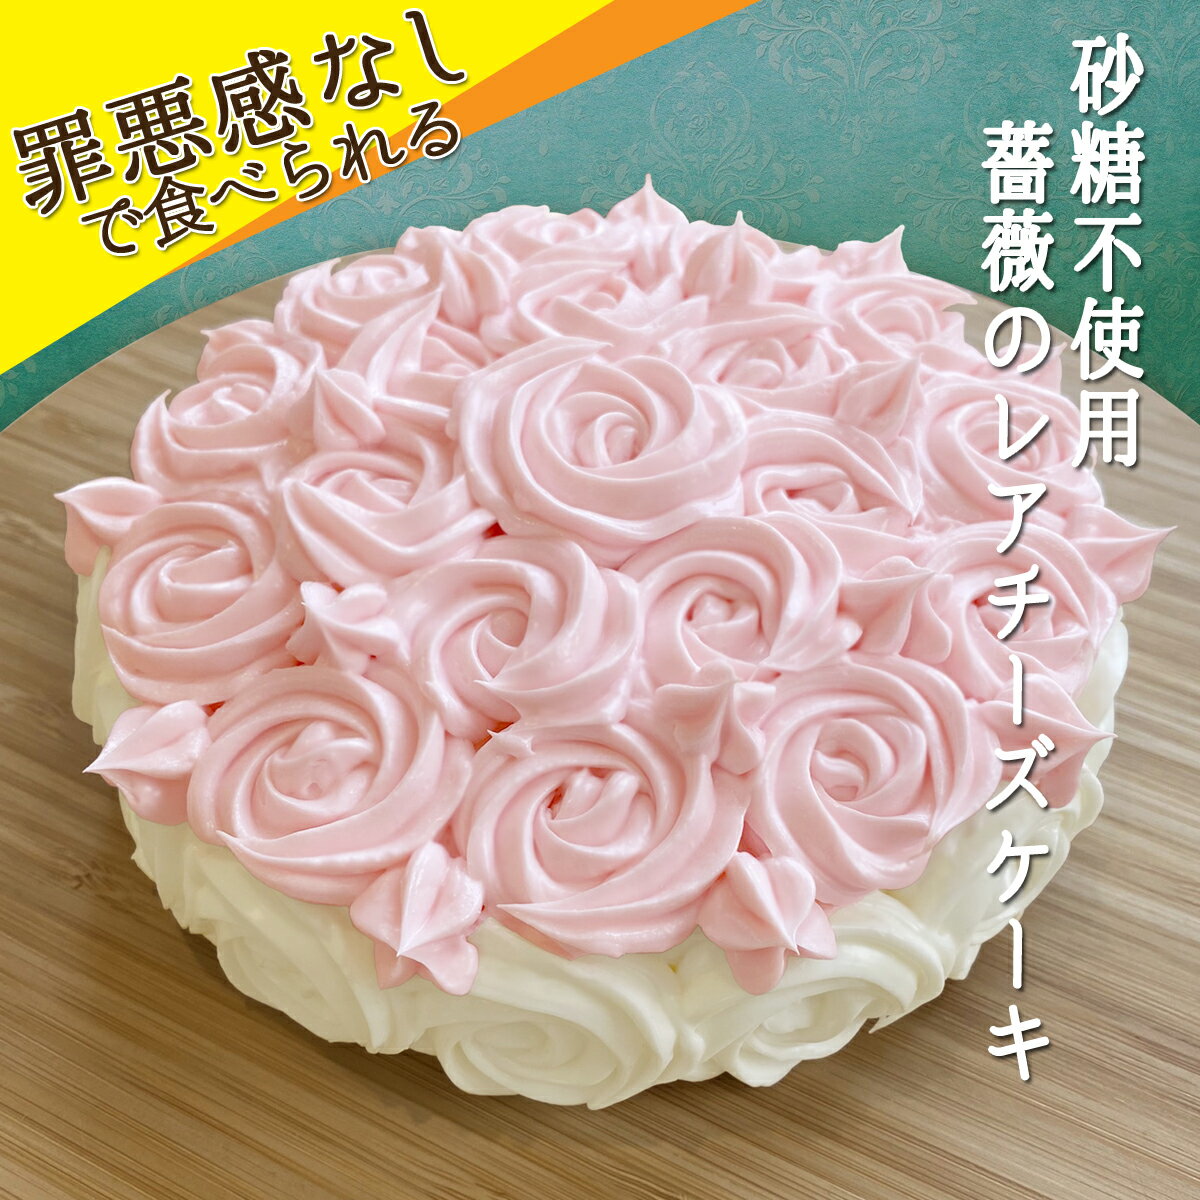 【砂糖不使用】薔薇のレアチーズ バラ ケーキ